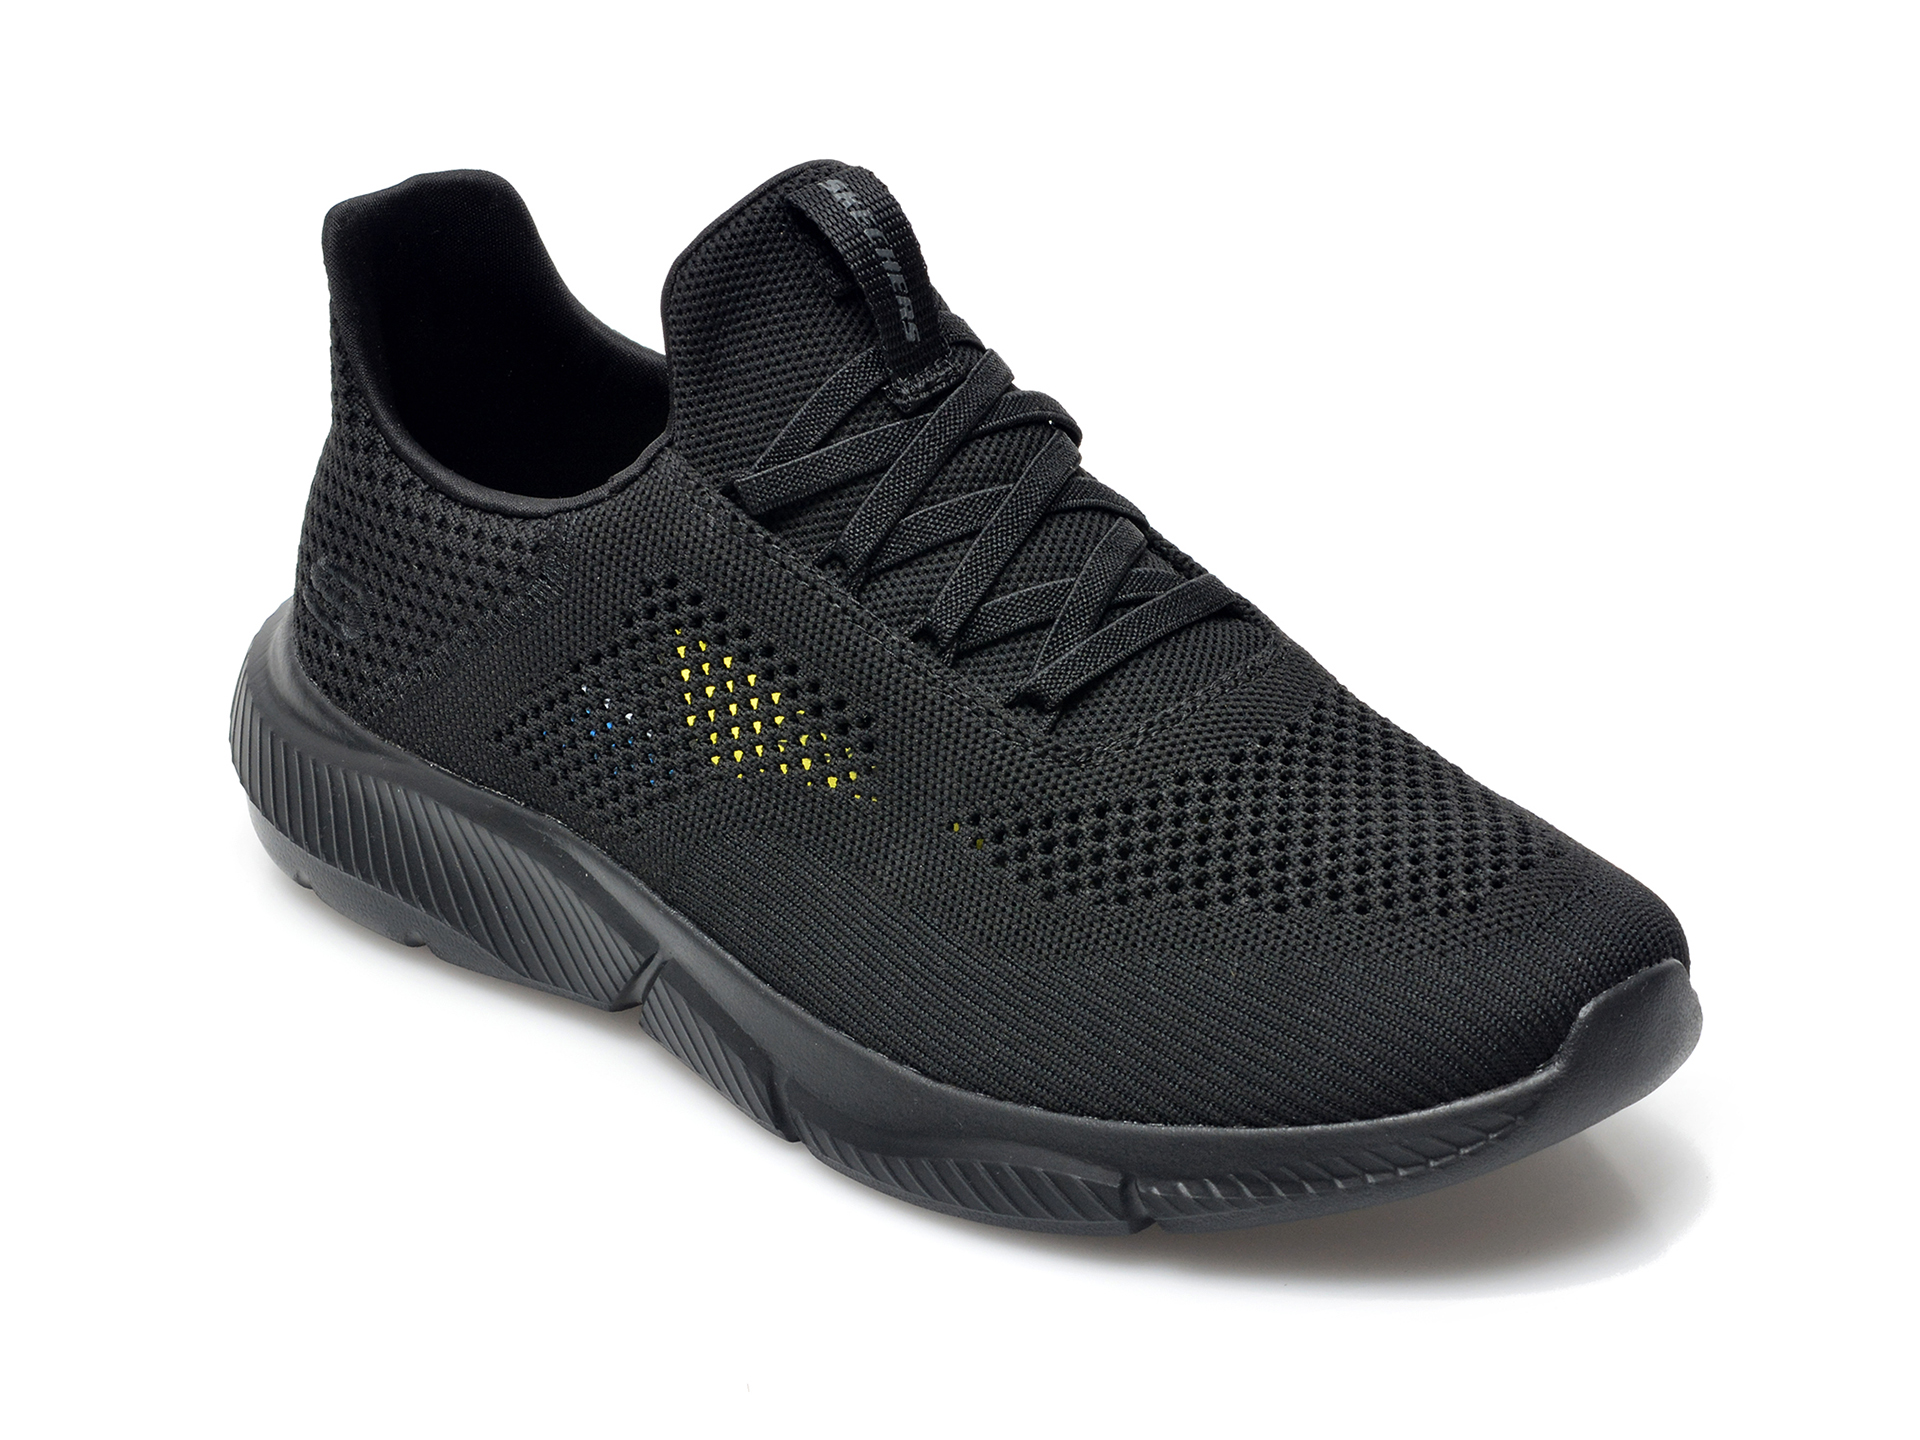 Pantofi sport SKECHERS negri, Ingram Brexie, din material textil otter.ro imagine 2022 reducere